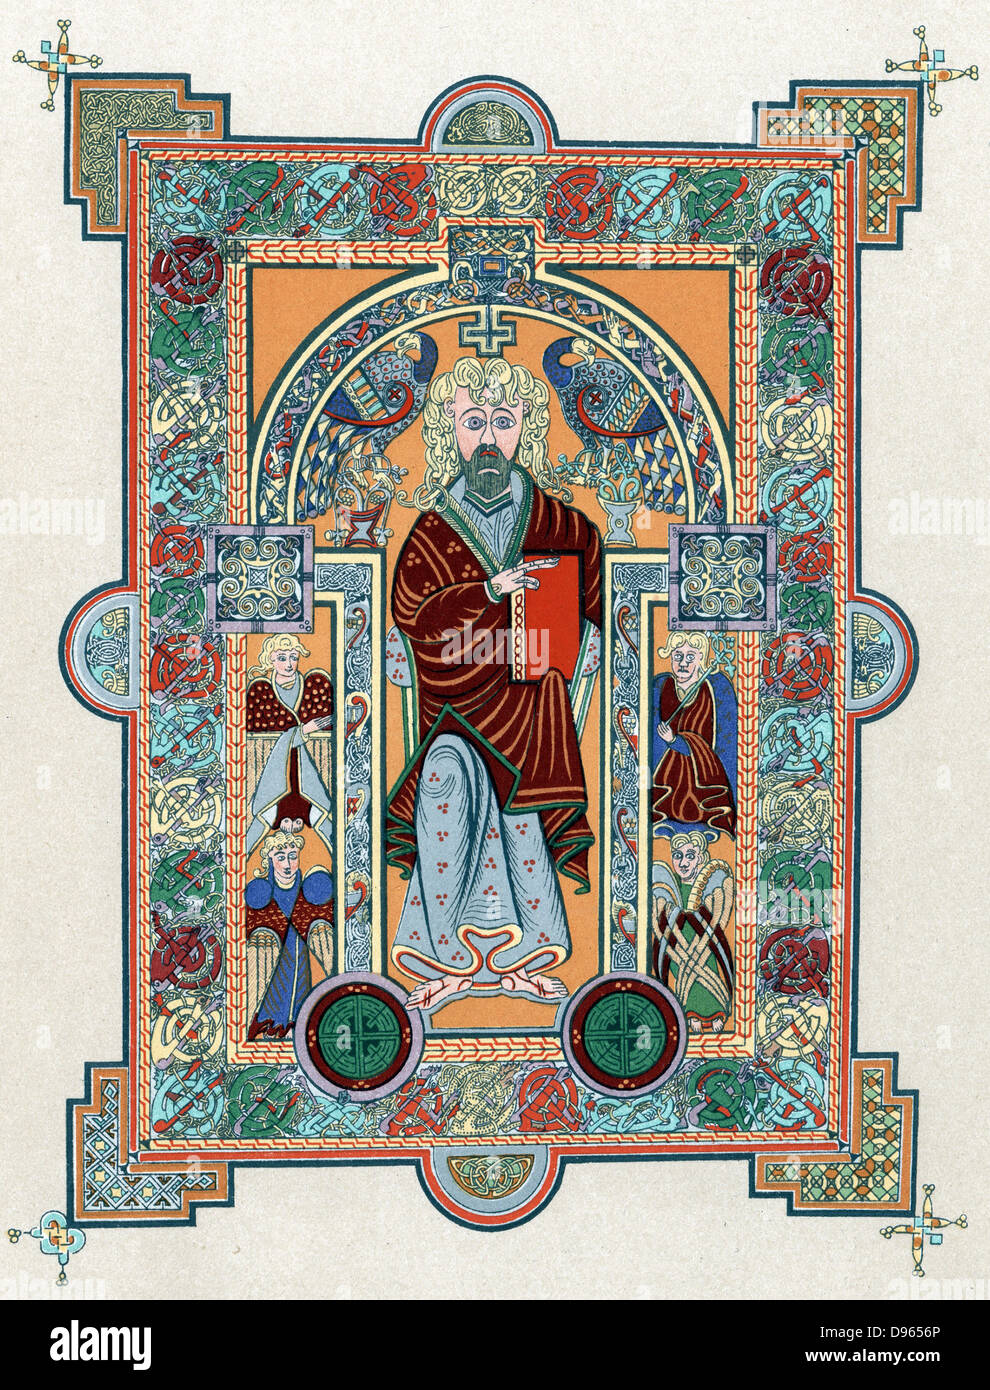 San Matteo dal Libro di Kells', Manoscritto latino dei Vangeli prodotta in Irlanda c800. Oltre a essere un testo religioso, è uno dei maggiori esempi di arte celtica Foto Stock